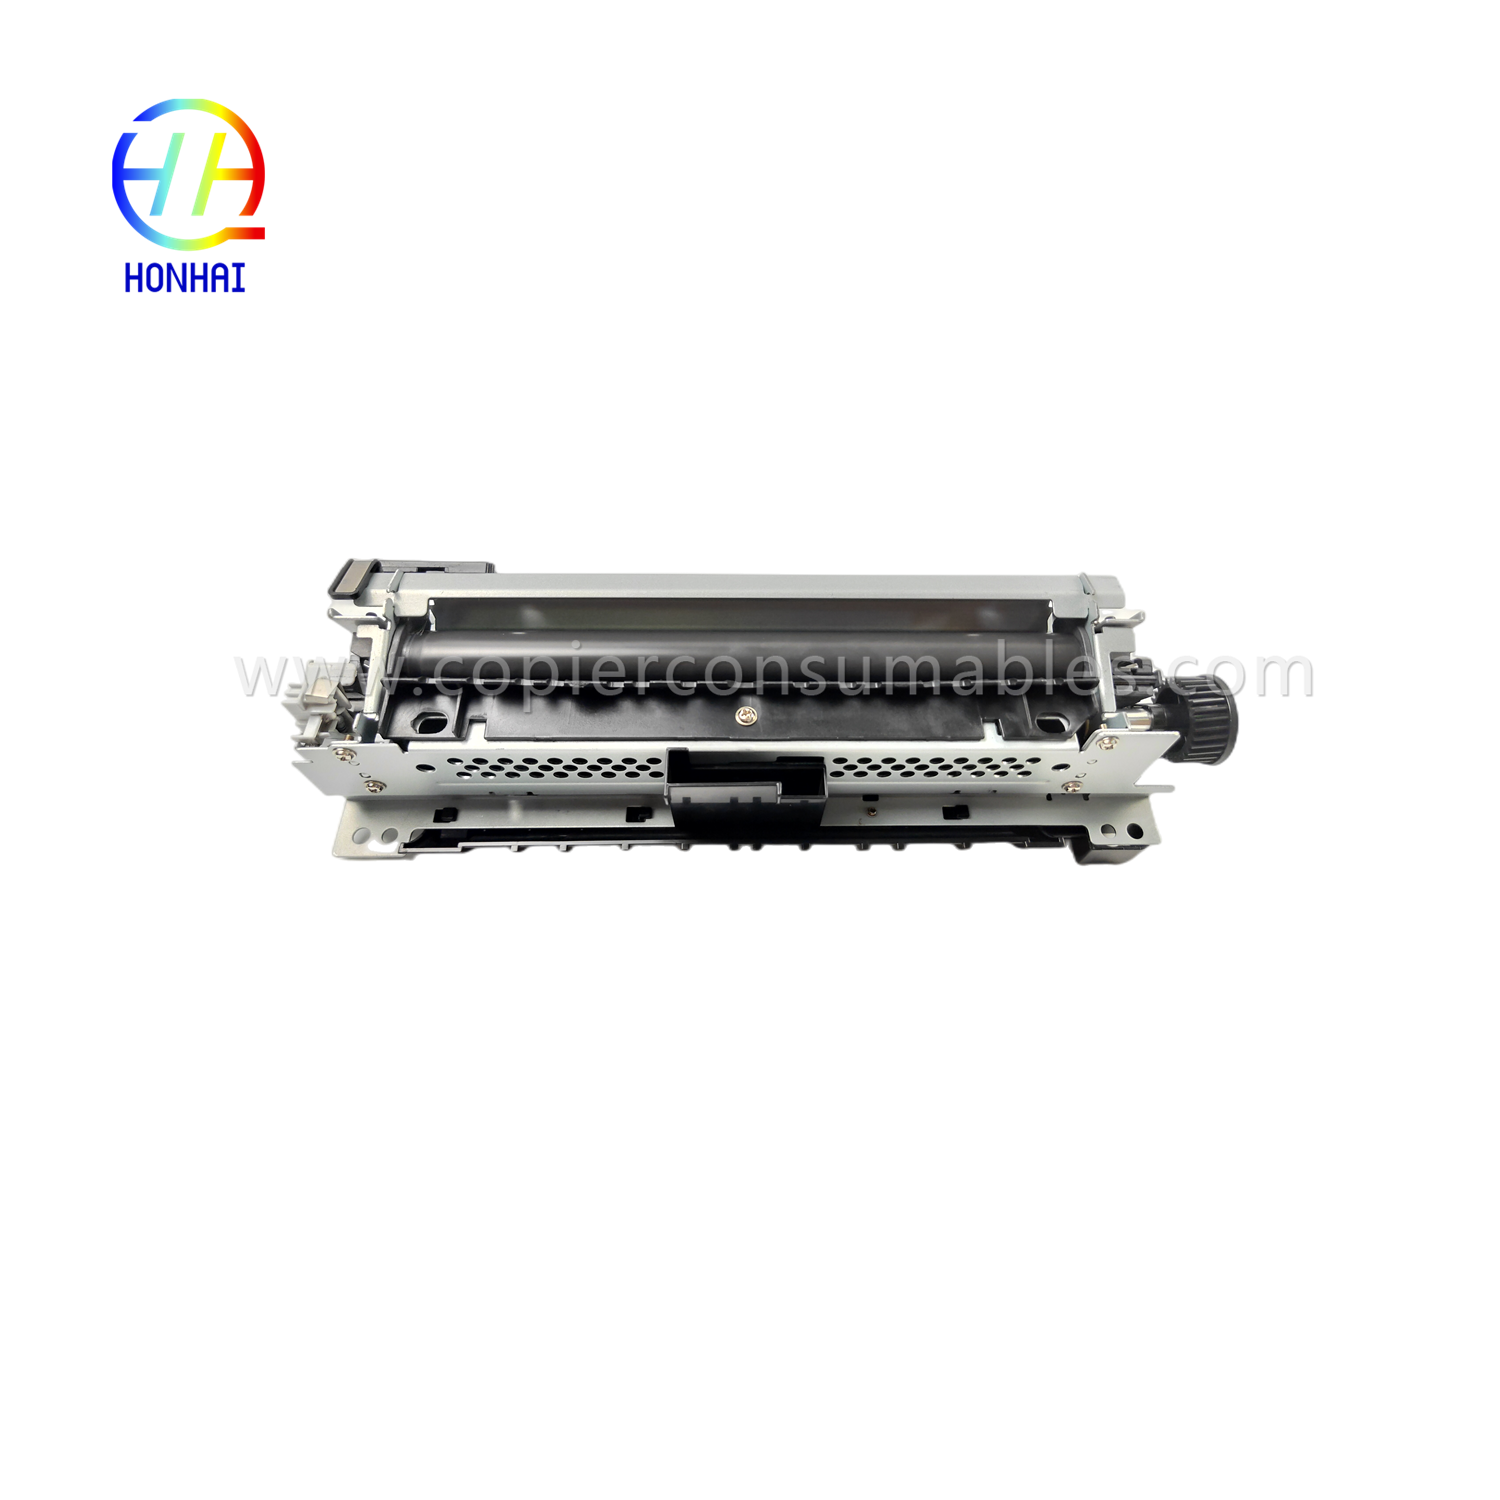 https://c585.goodo.net/fuser-assembly-220v-japan-for-hp-521-525-m521-m525-rm1-8508-rm1-8508-000-fuser-unit-product/